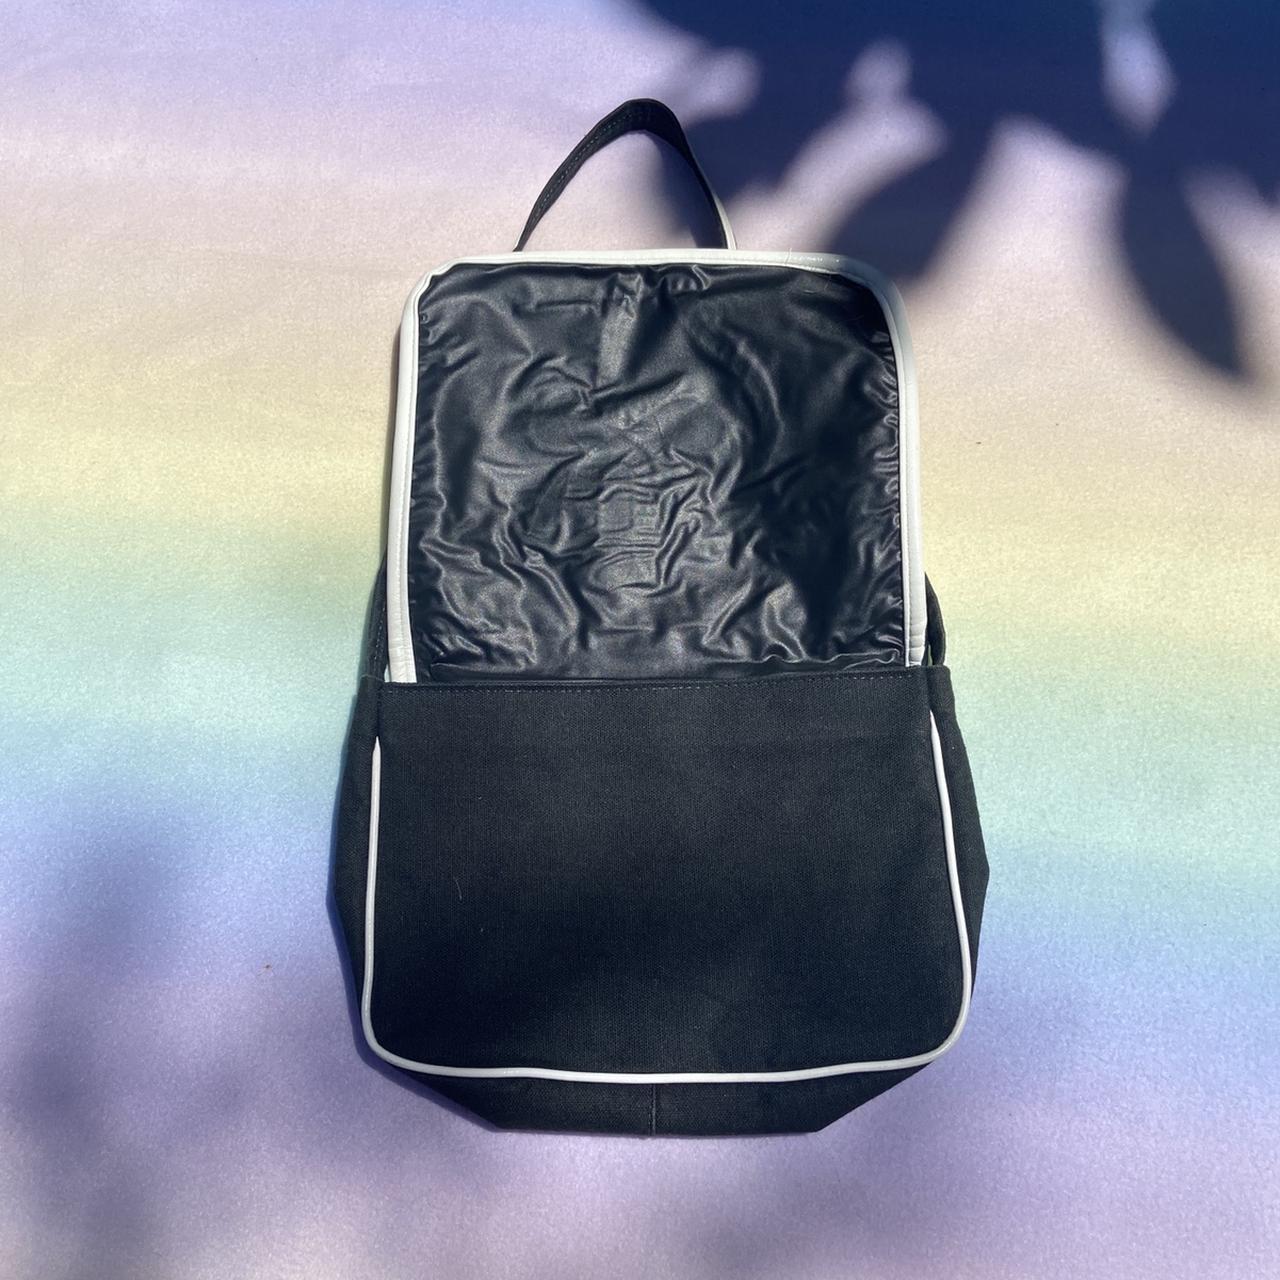 The “Flower Power” Bag Vintage Black bag with white... - Depop